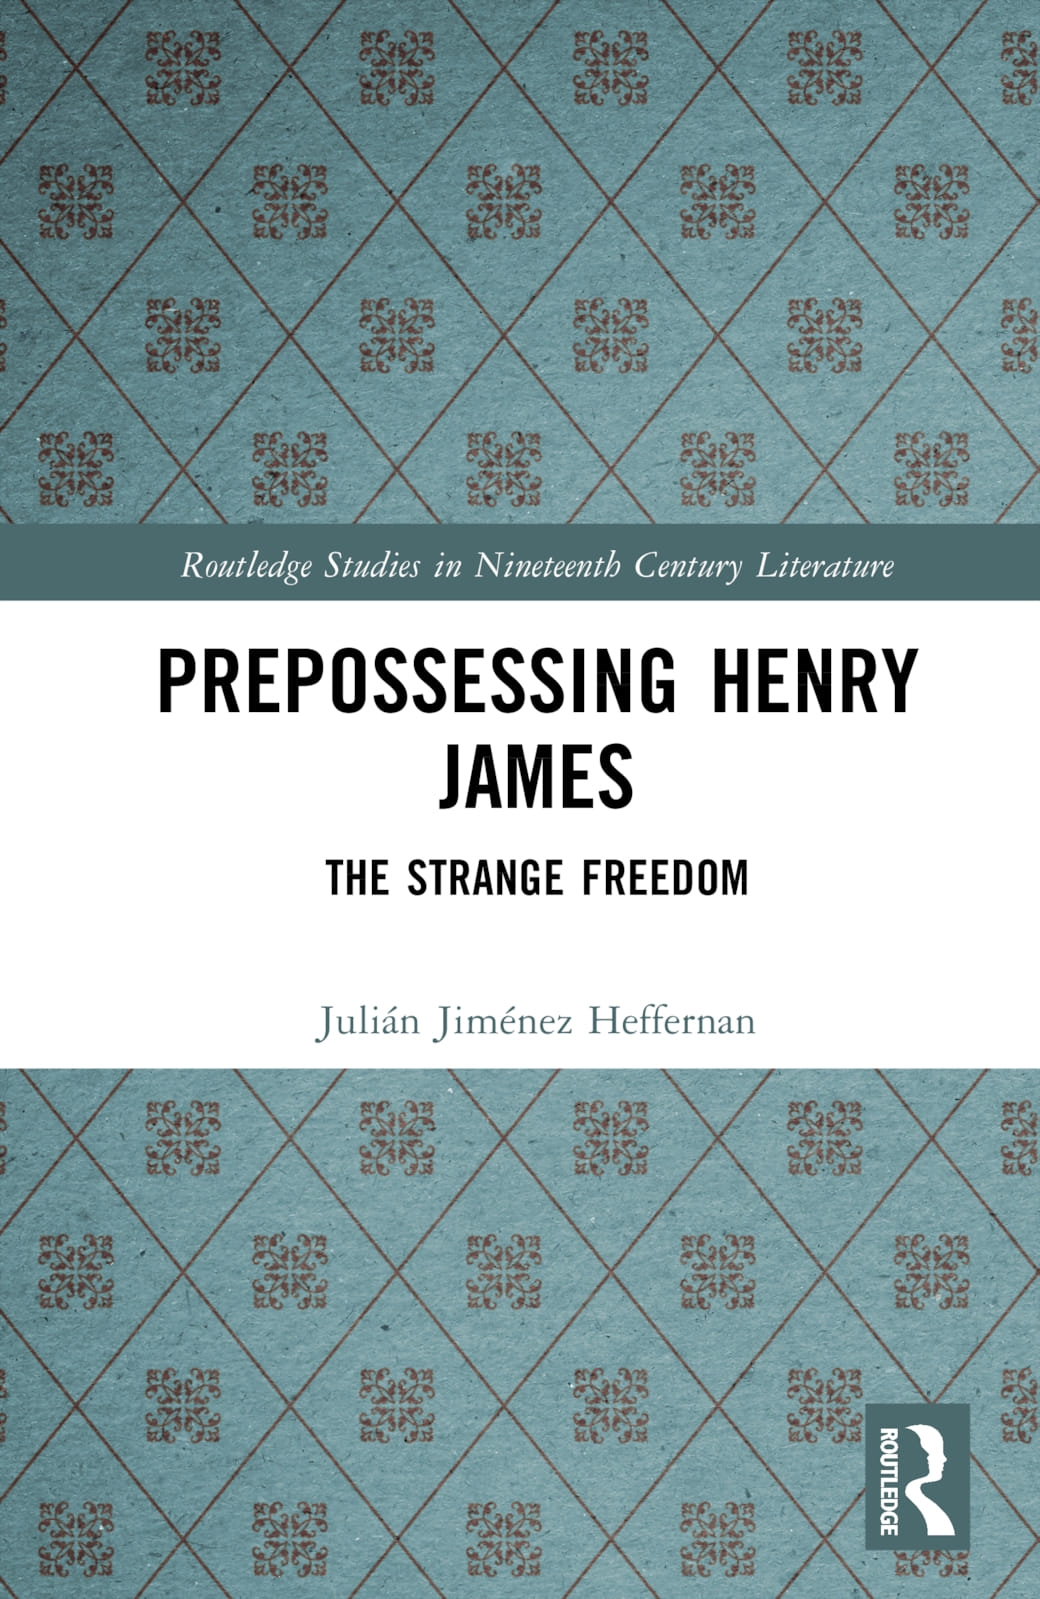 Prepossessing Henry James’ Fiction